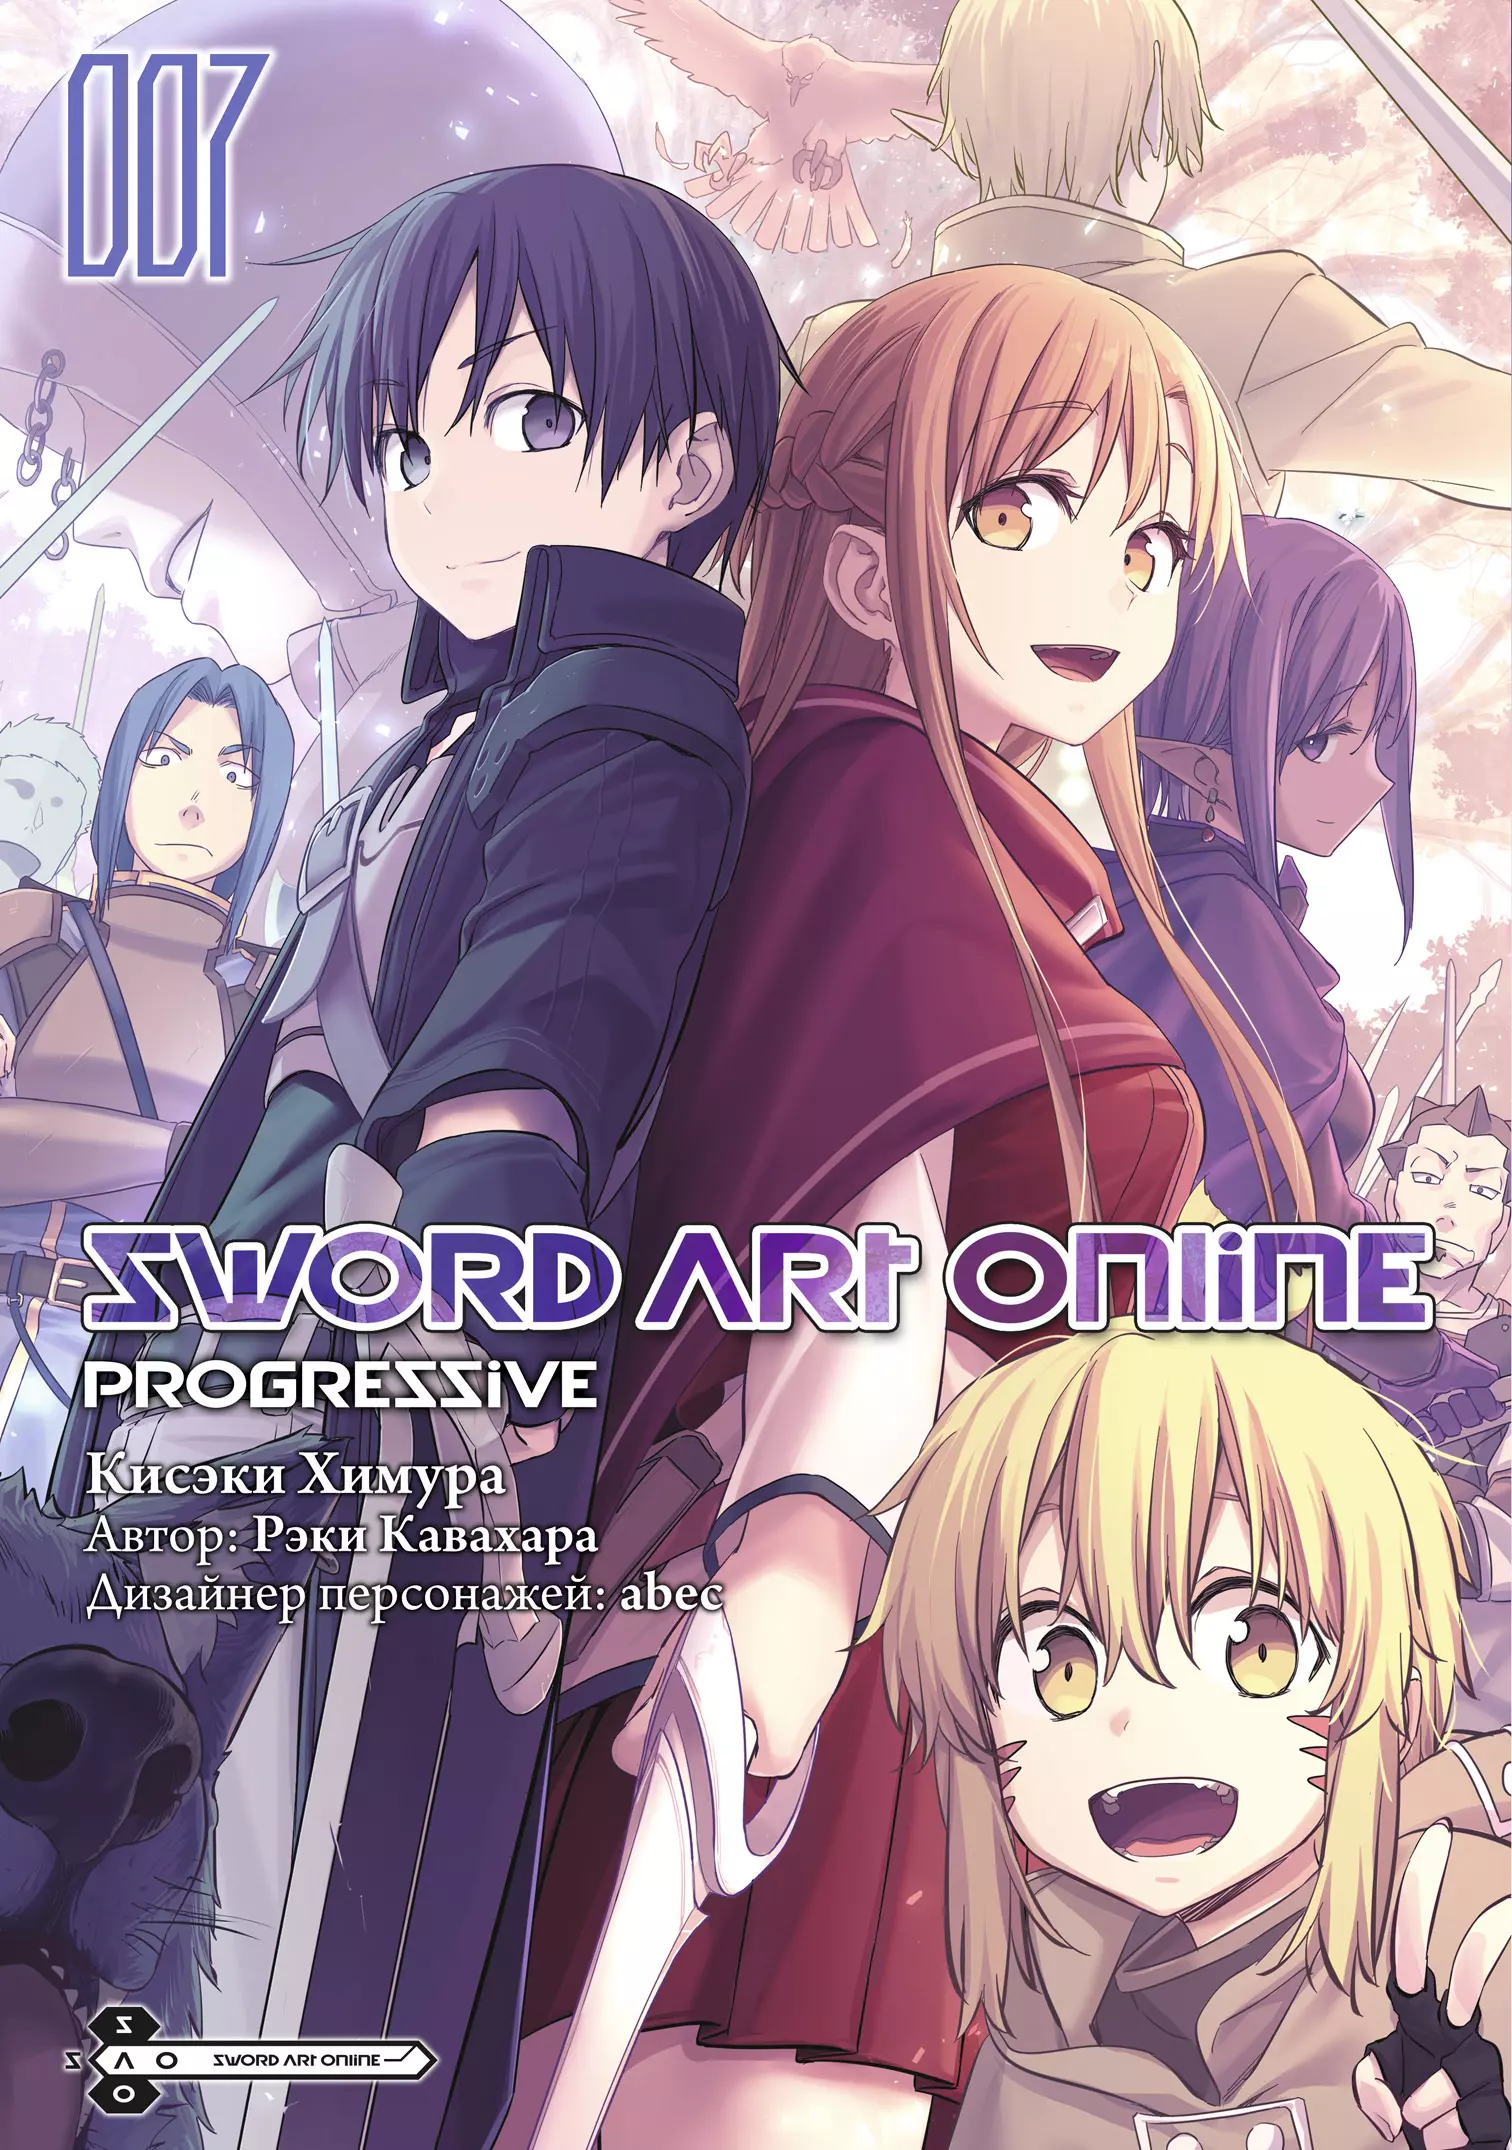 Кавахара Рэки Sword Art Online: Progressive. Том 7 кавахара рэки химура кисэки sword art online progressive том 3